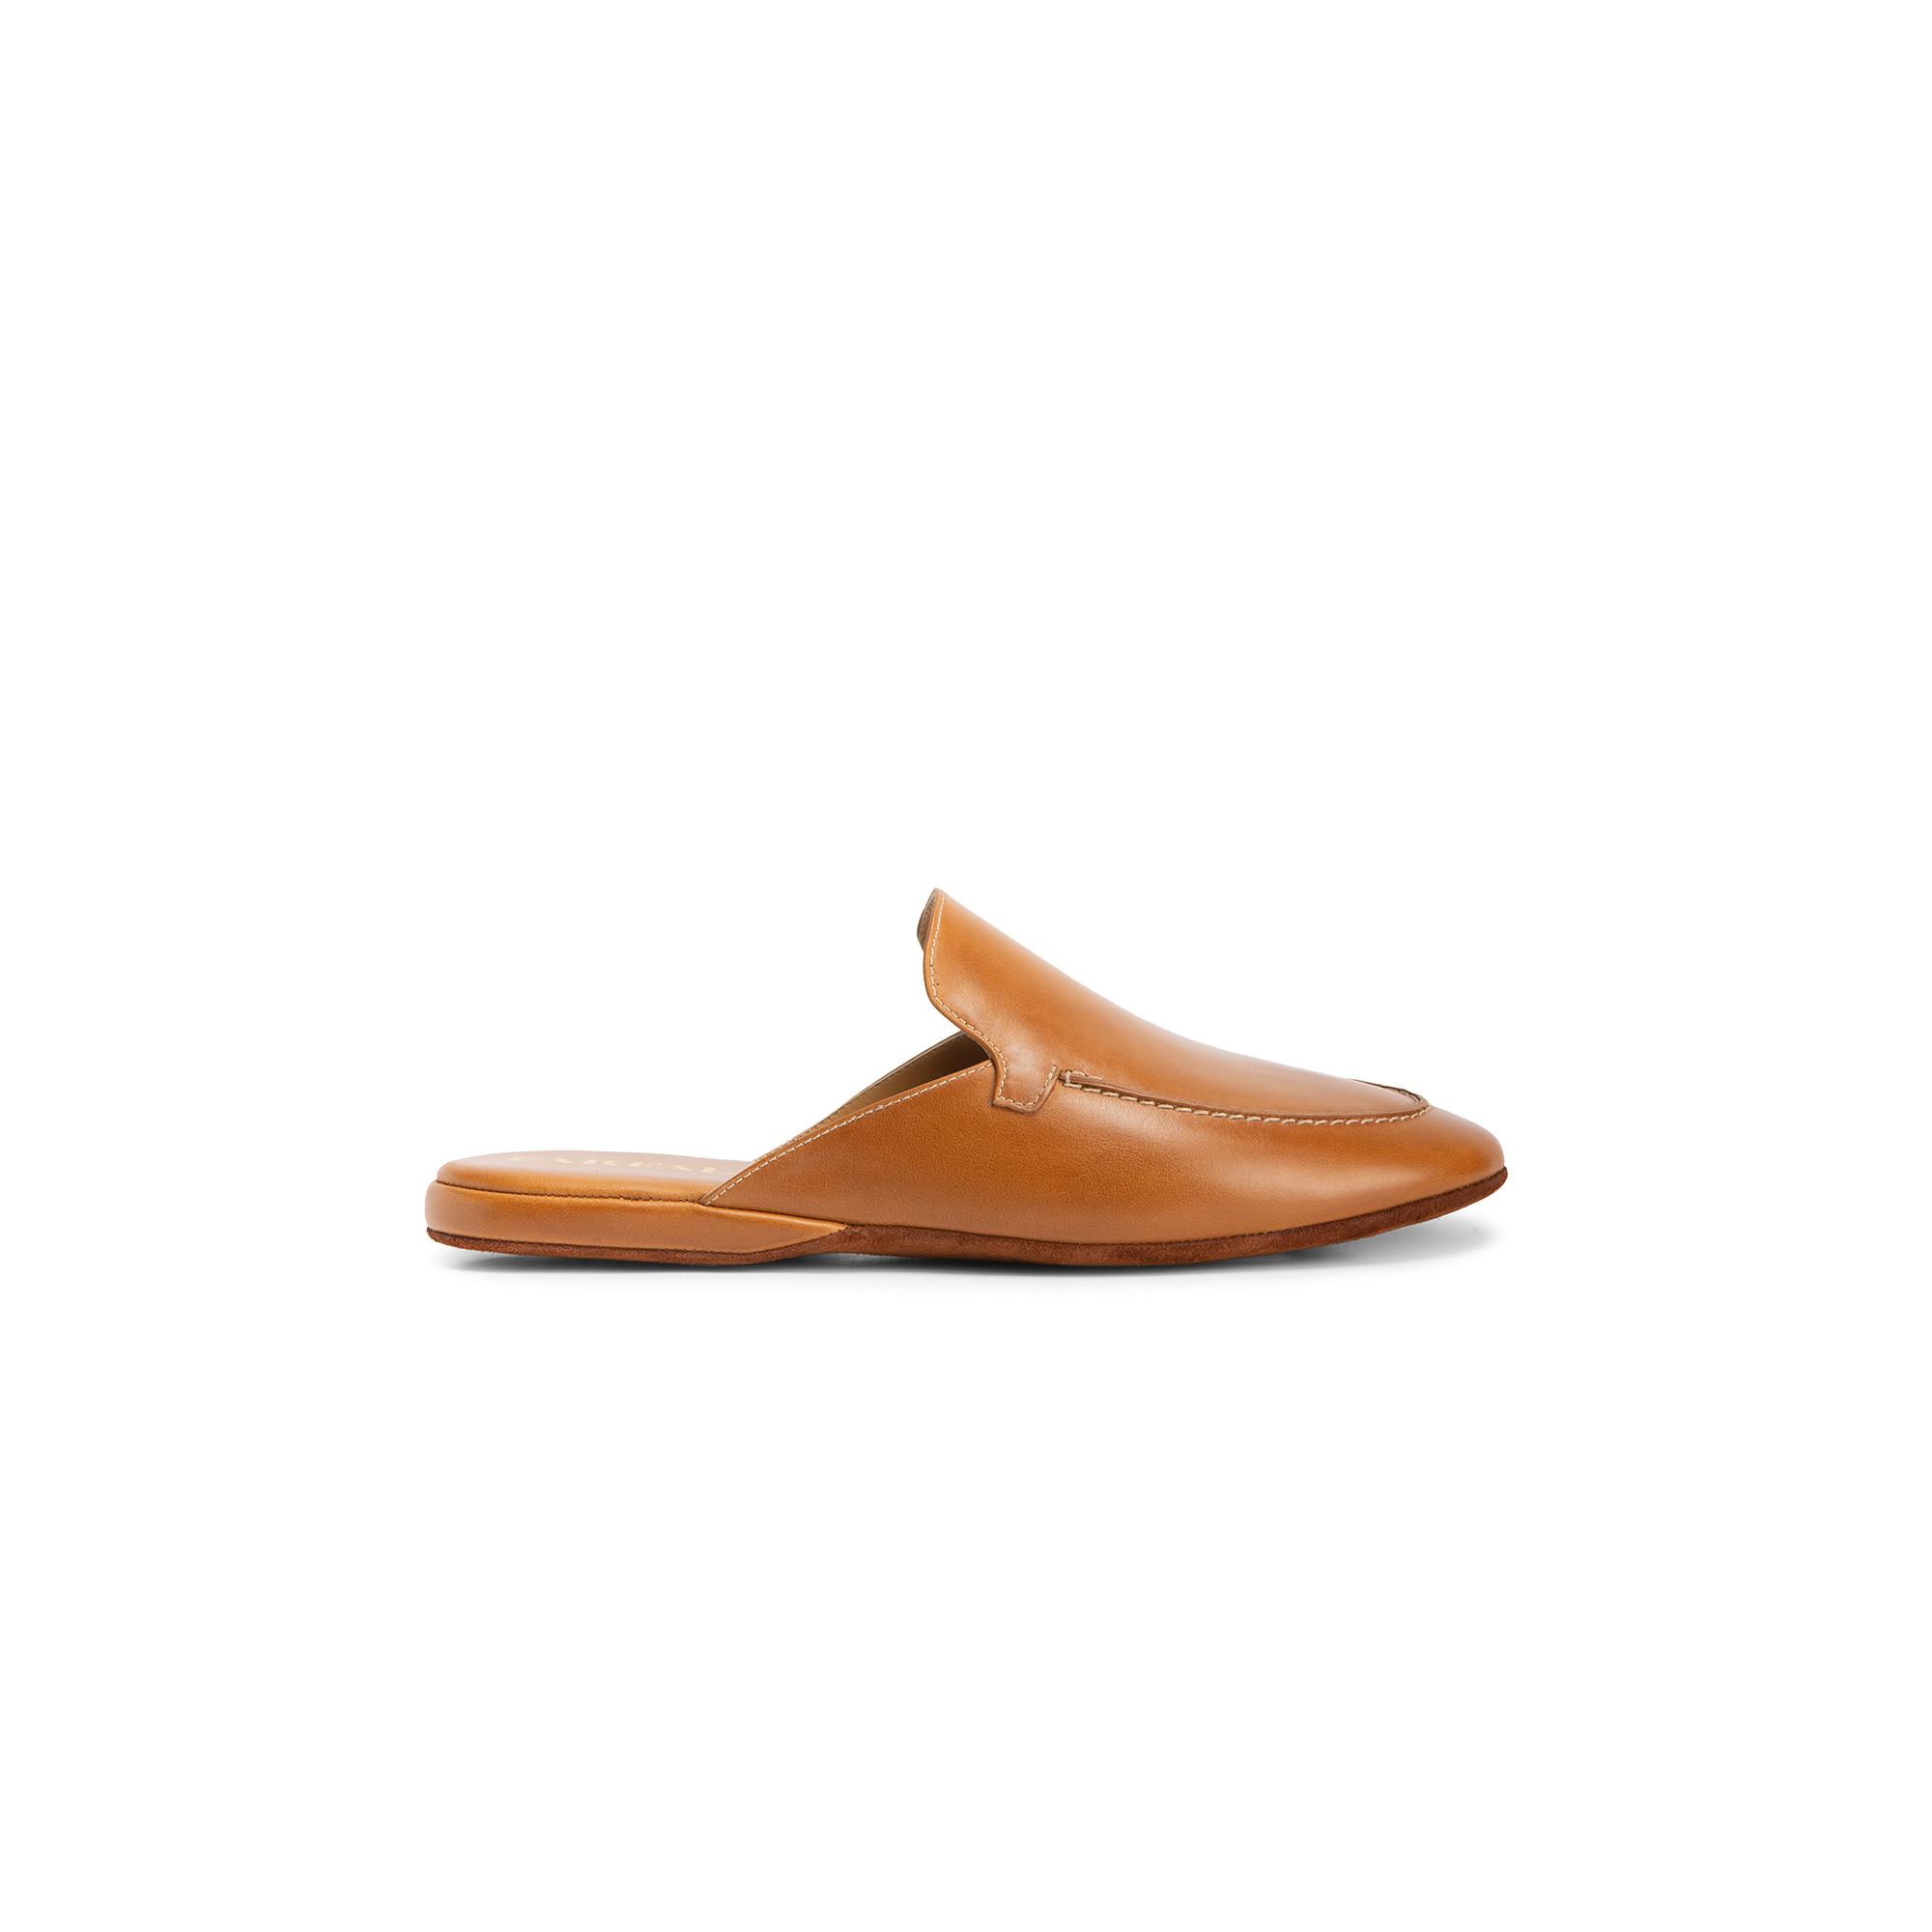 Pantofola aperta interno vitello tan - Farfalla italian slippers